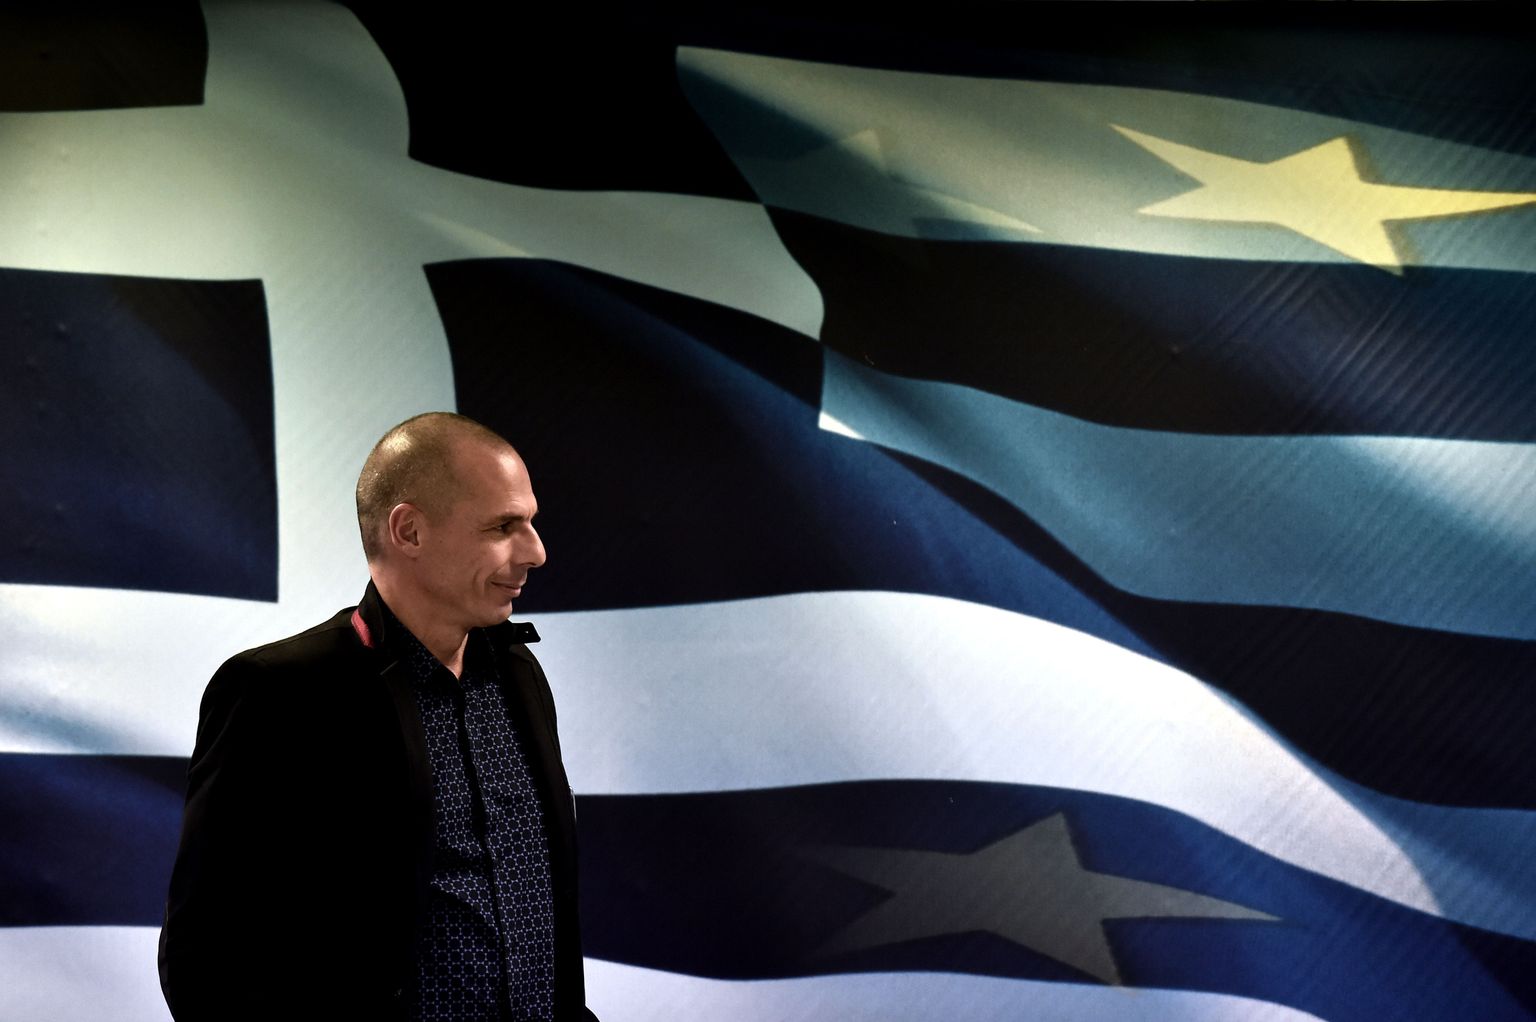 Kreeka vastne rahandusminister, libertaar ja marksist Yanis Varoufakis.